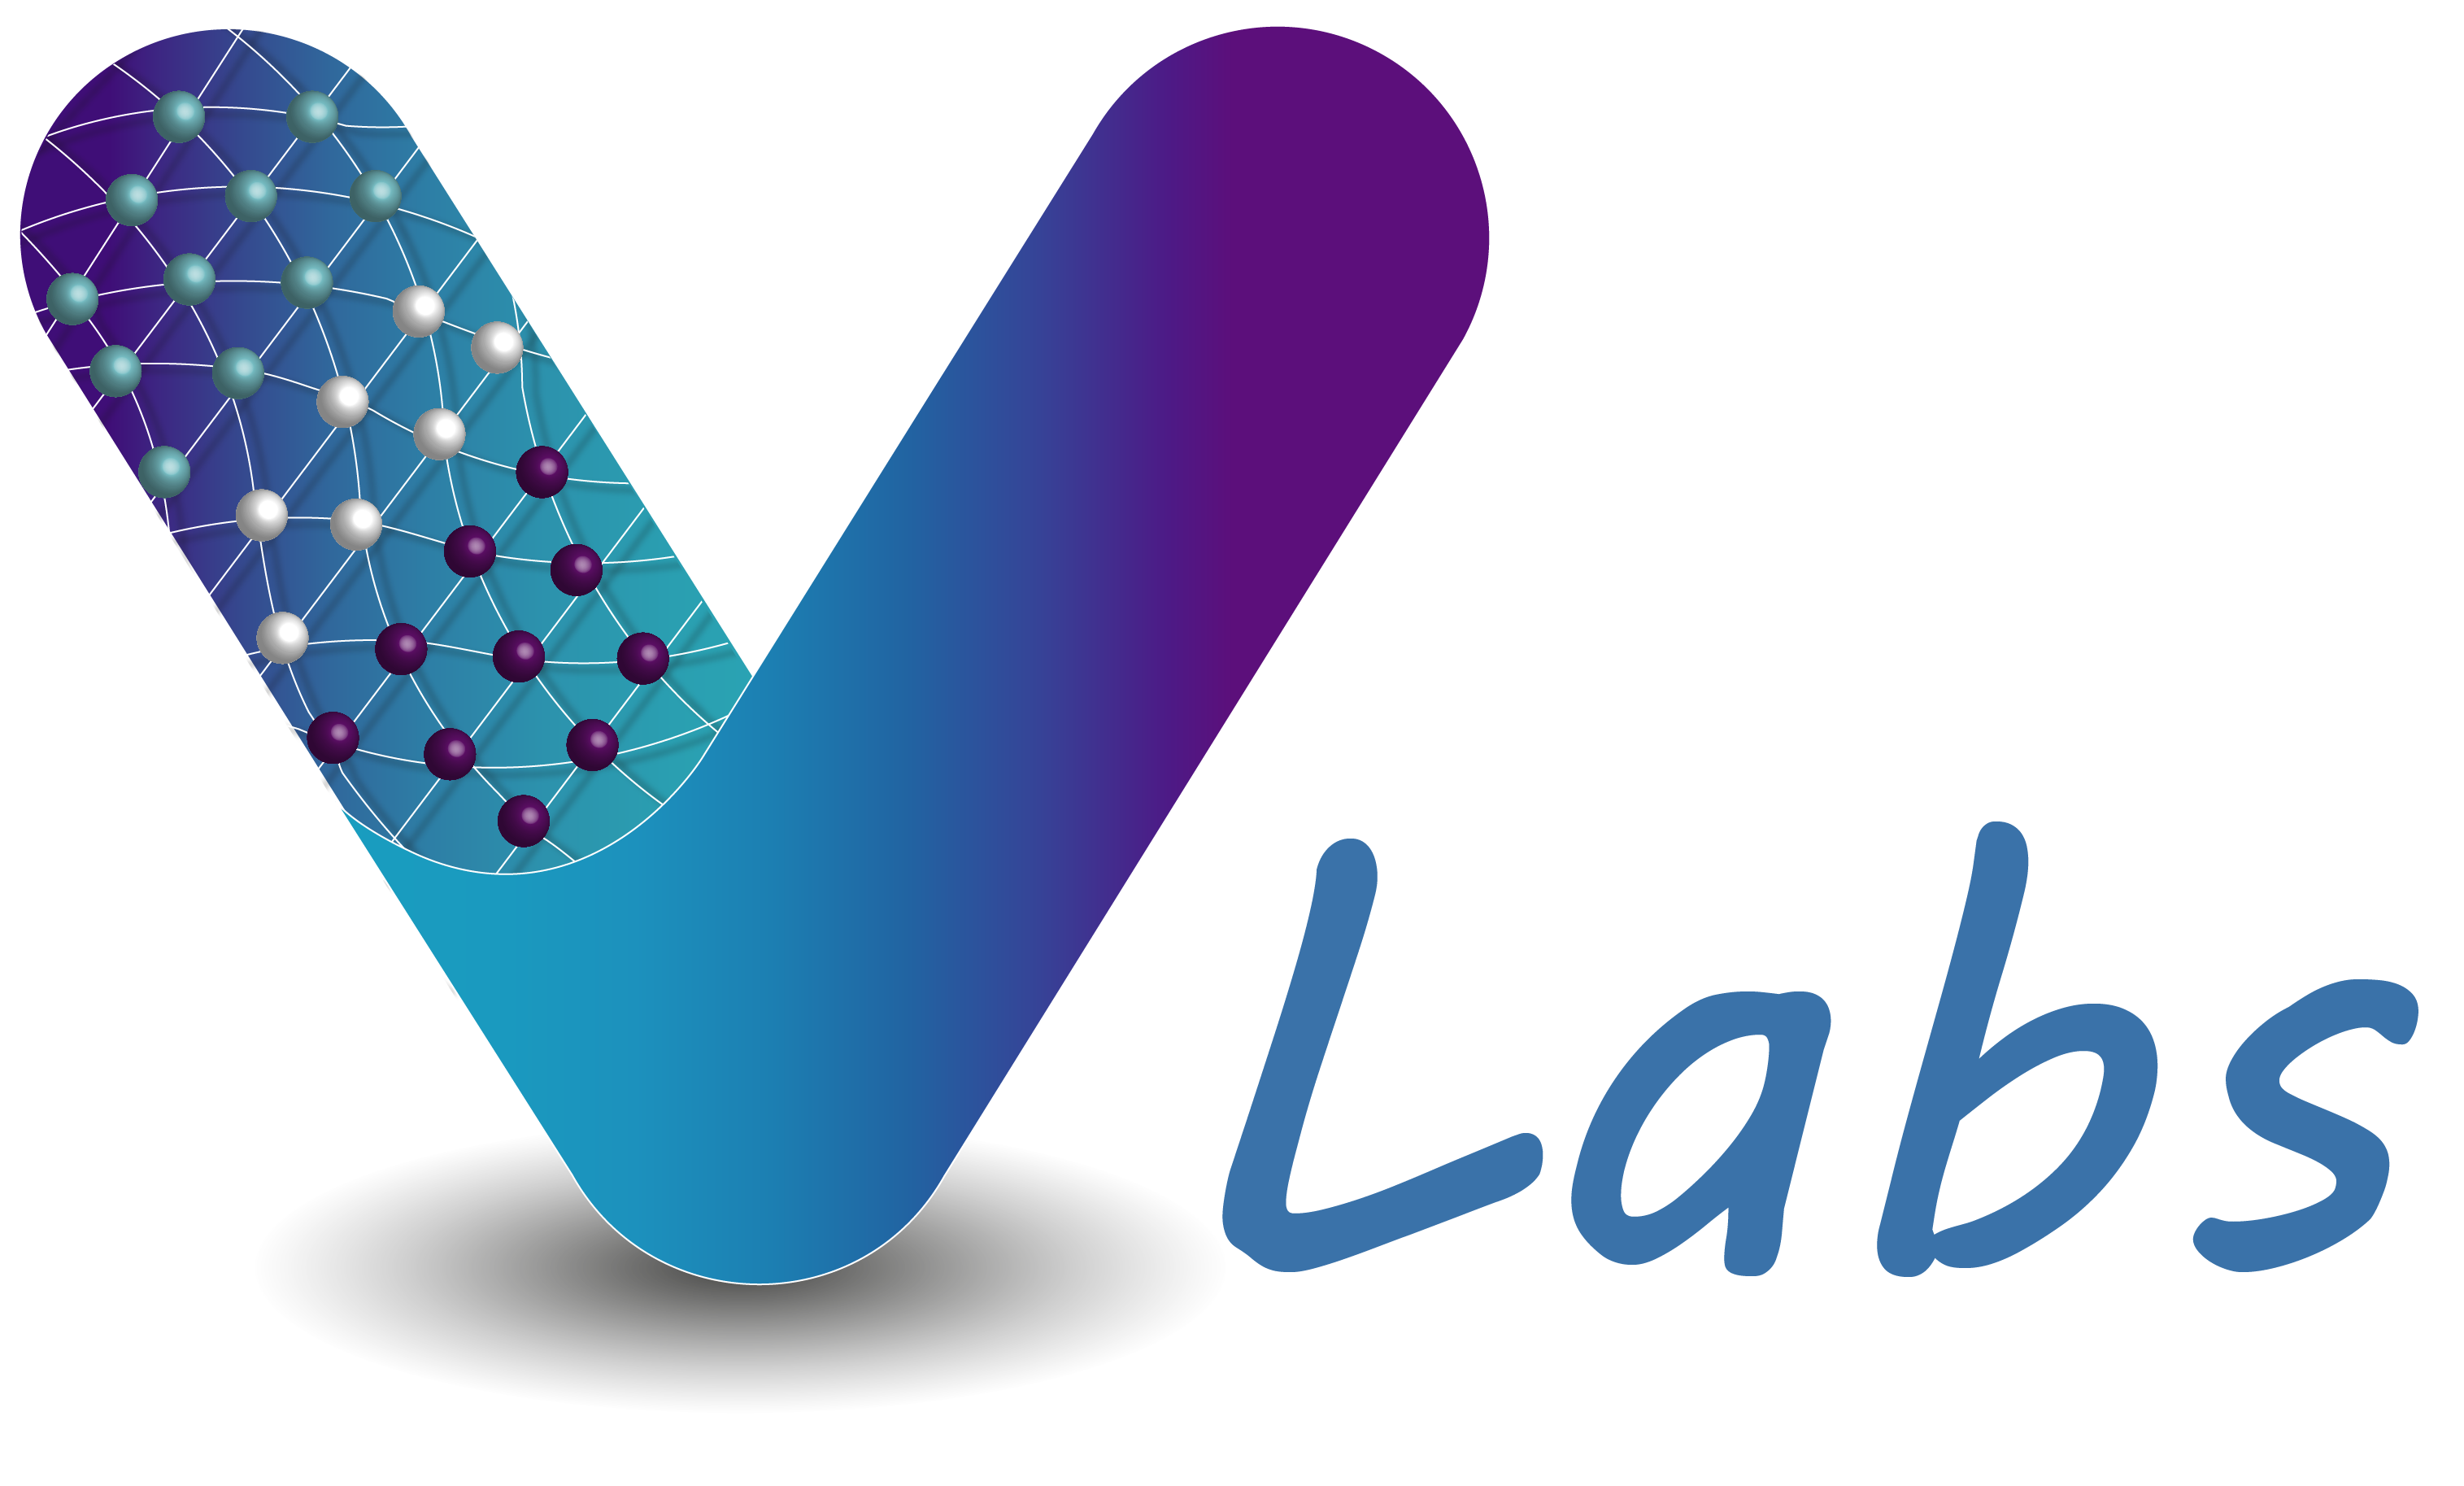 v-labs-logo